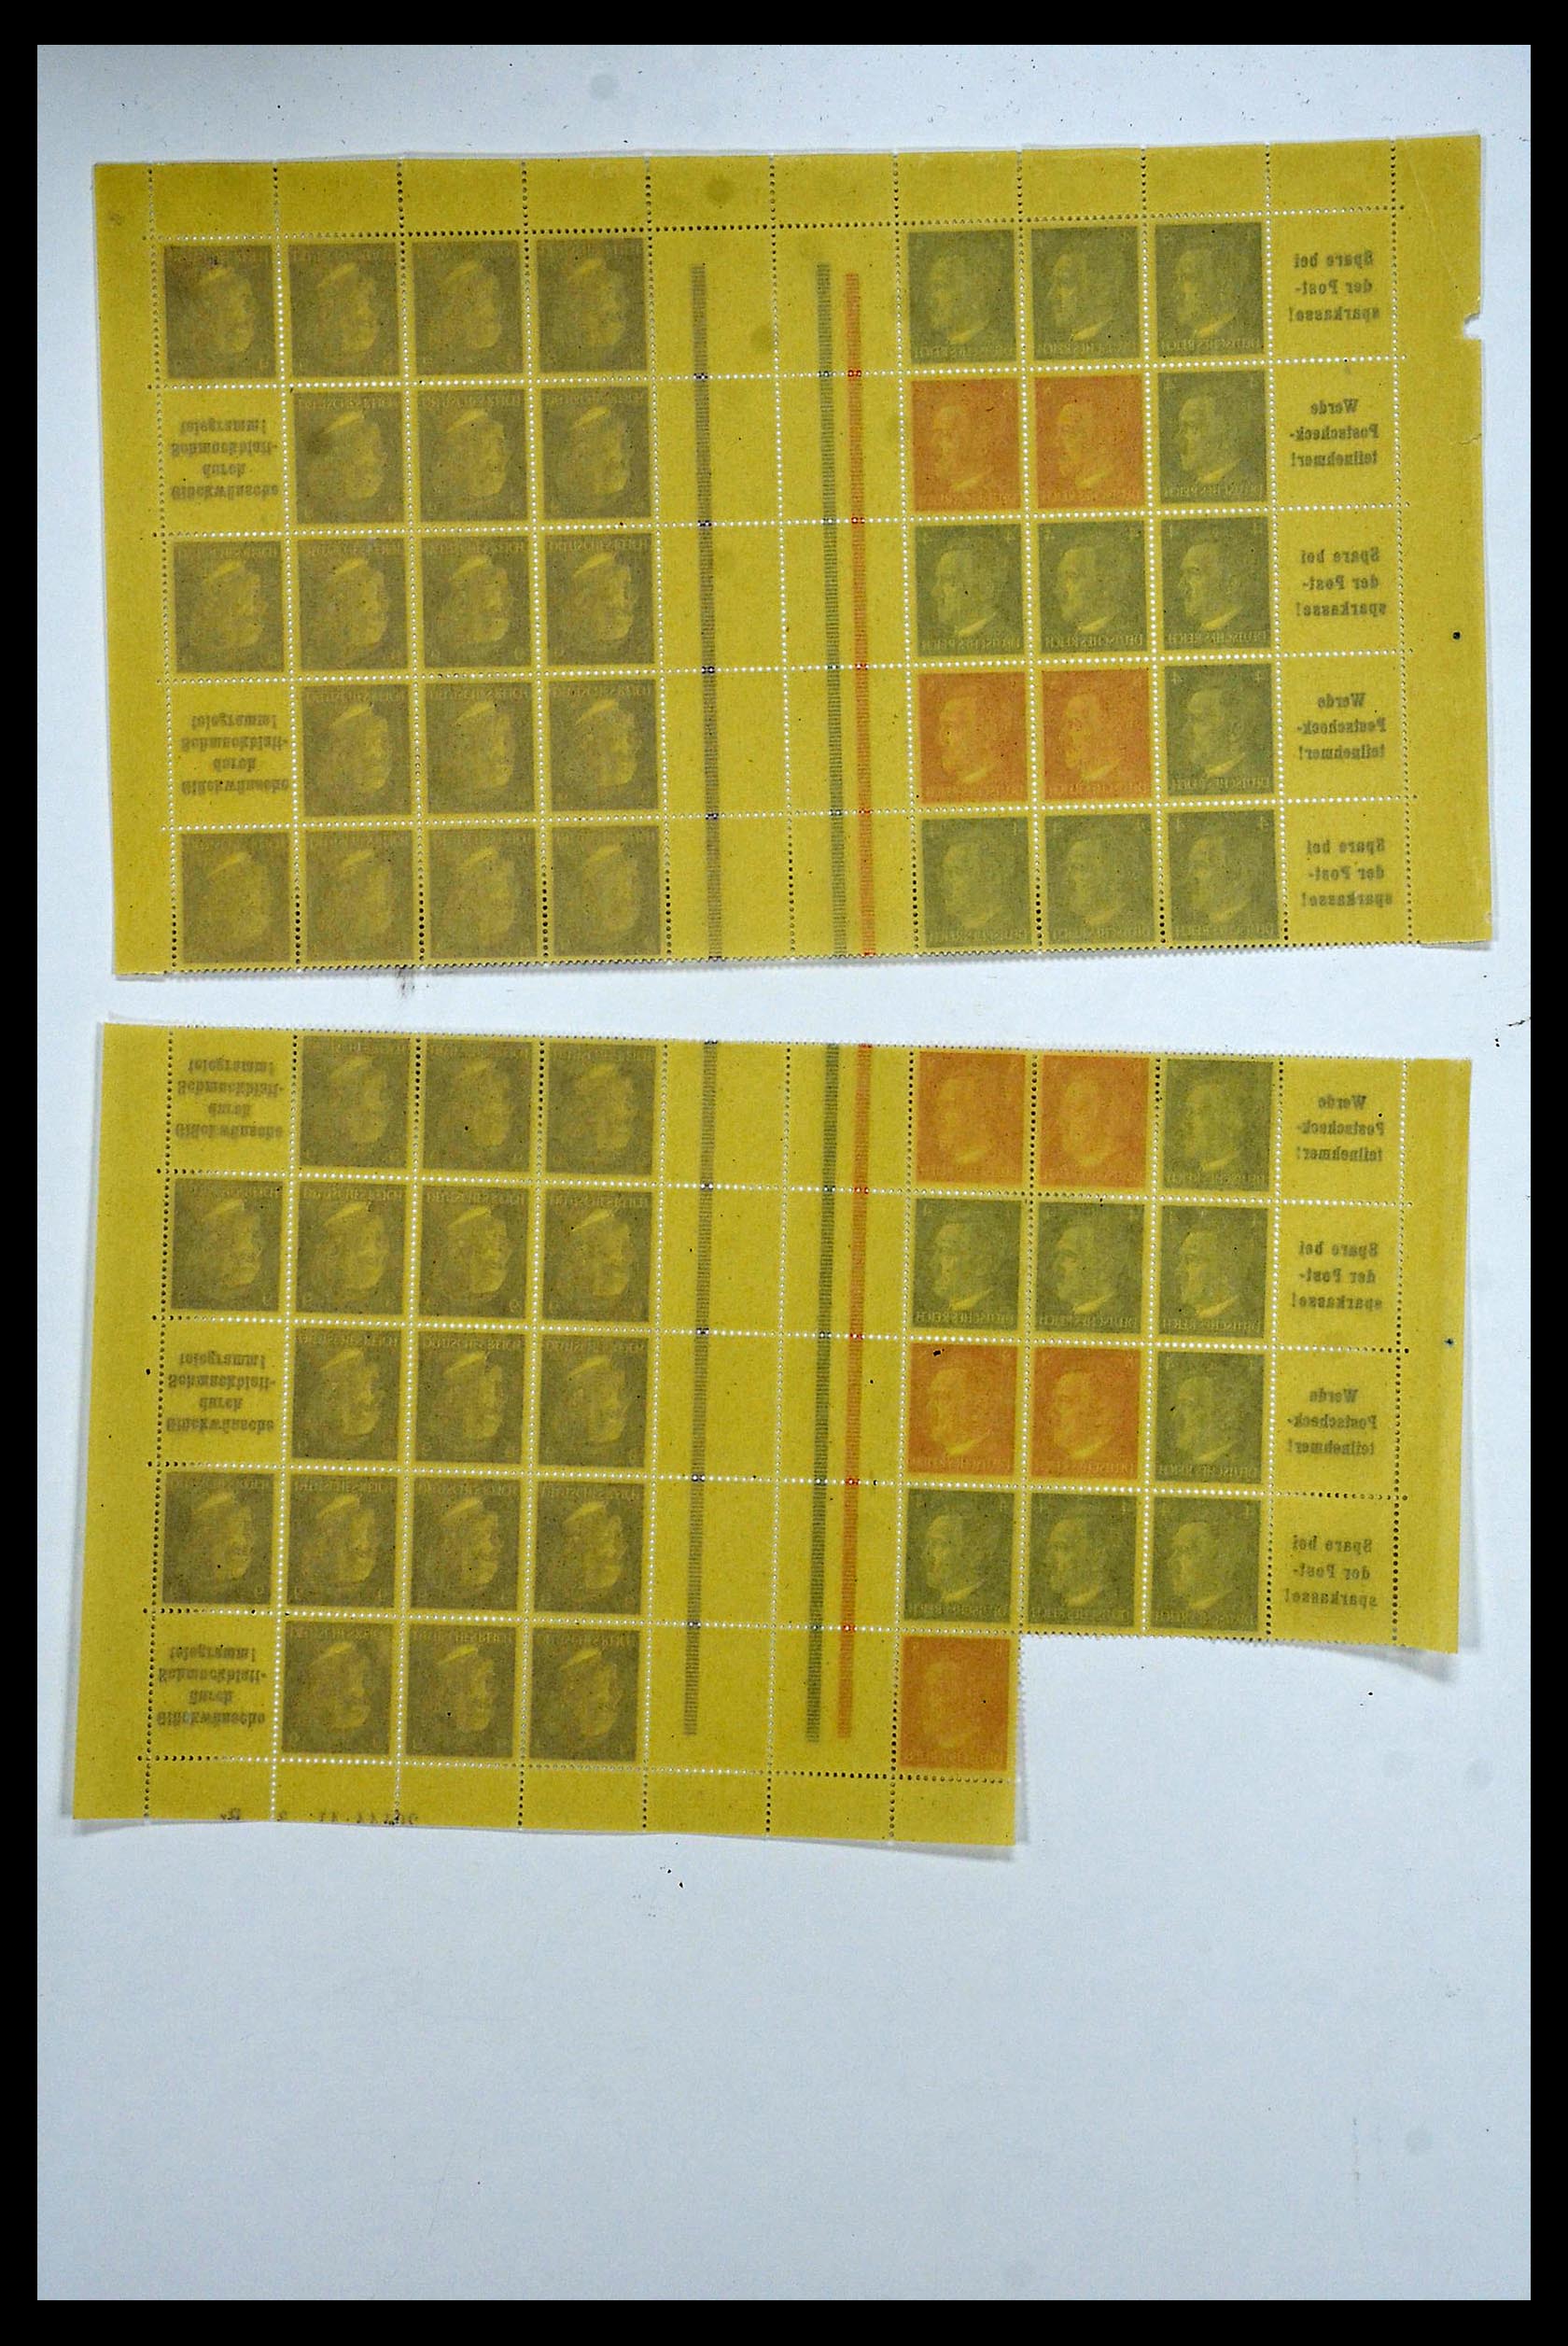 34164 080 - Stamp collection 34164 German Reich Markenheftchenbogen 1933-1942.